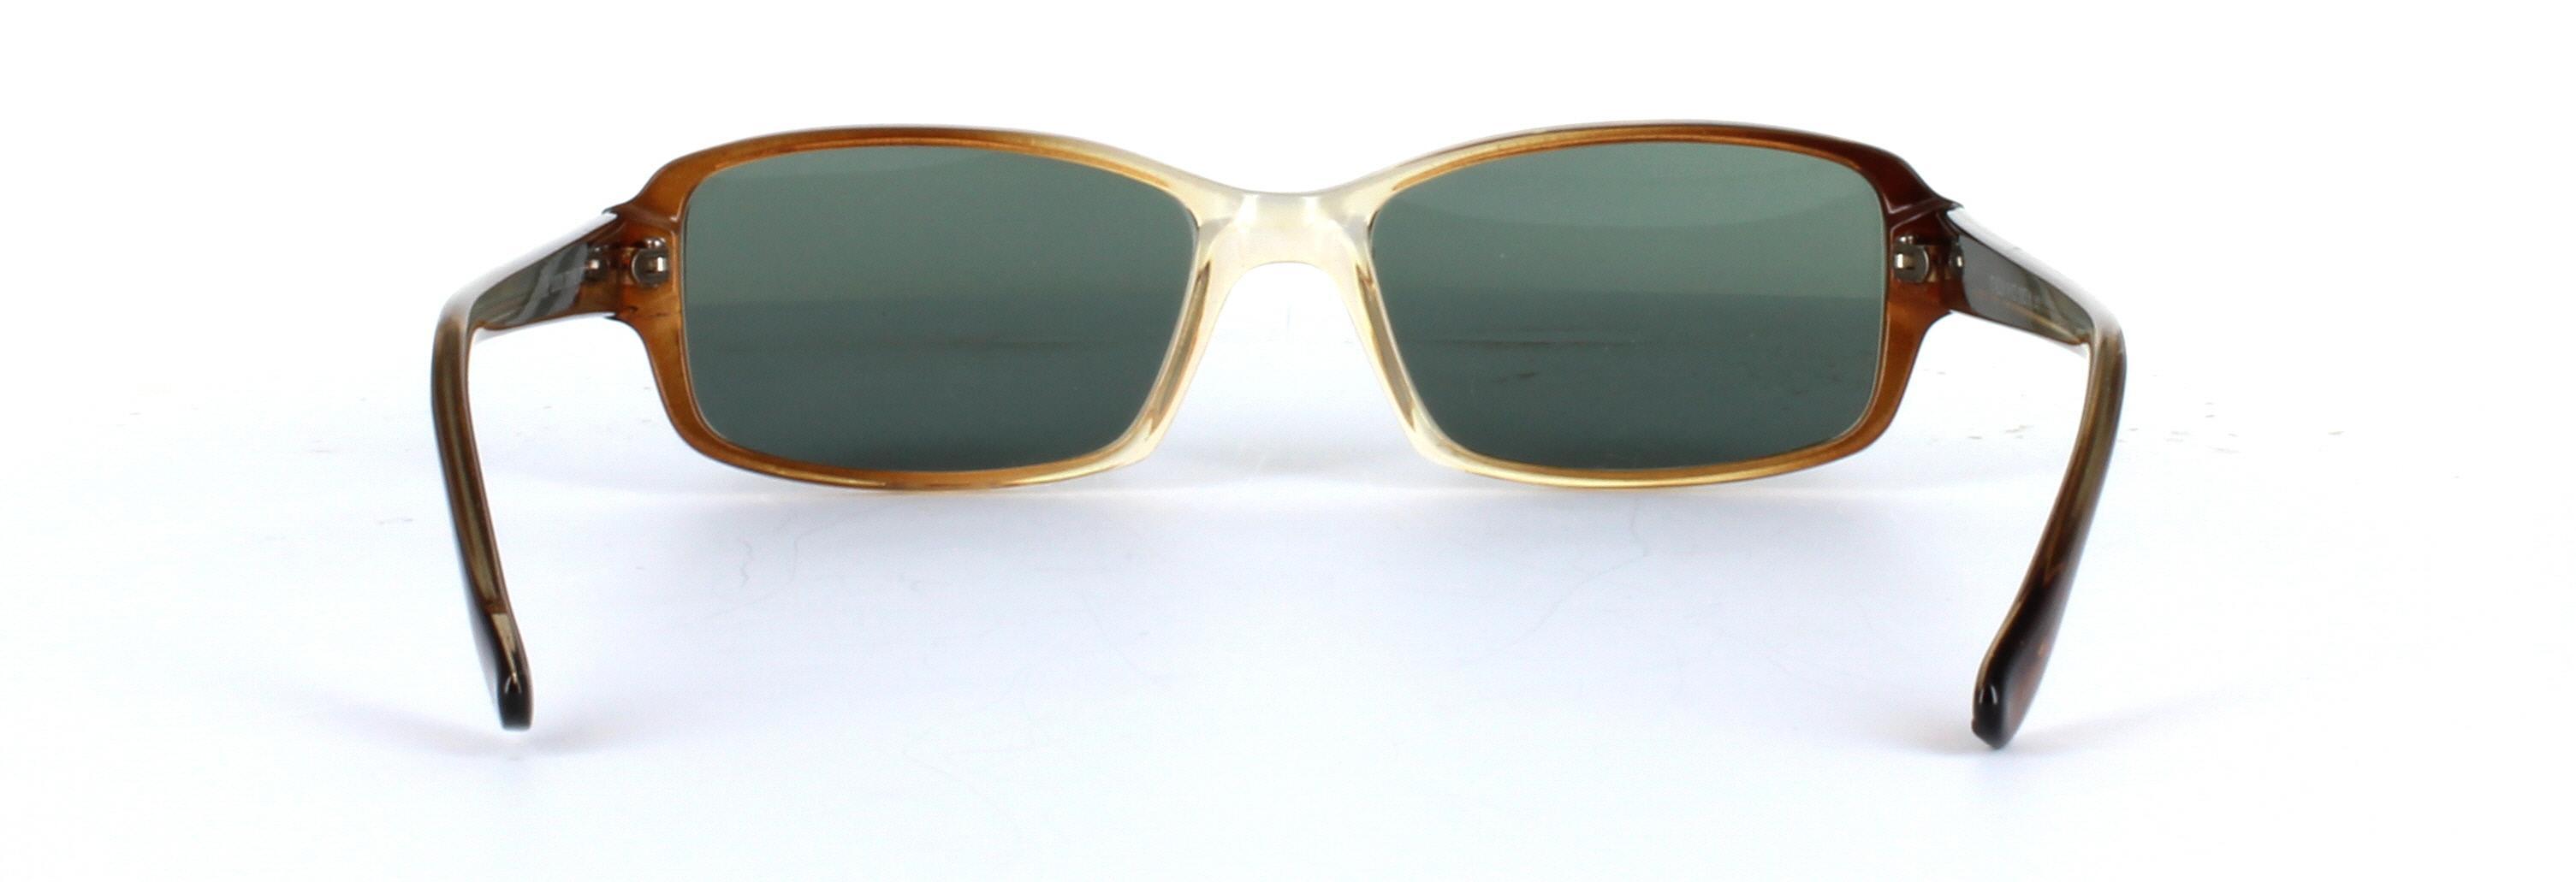 Chico Brown Full Rim Rectangular Plastic Sunglasses - Image View 3